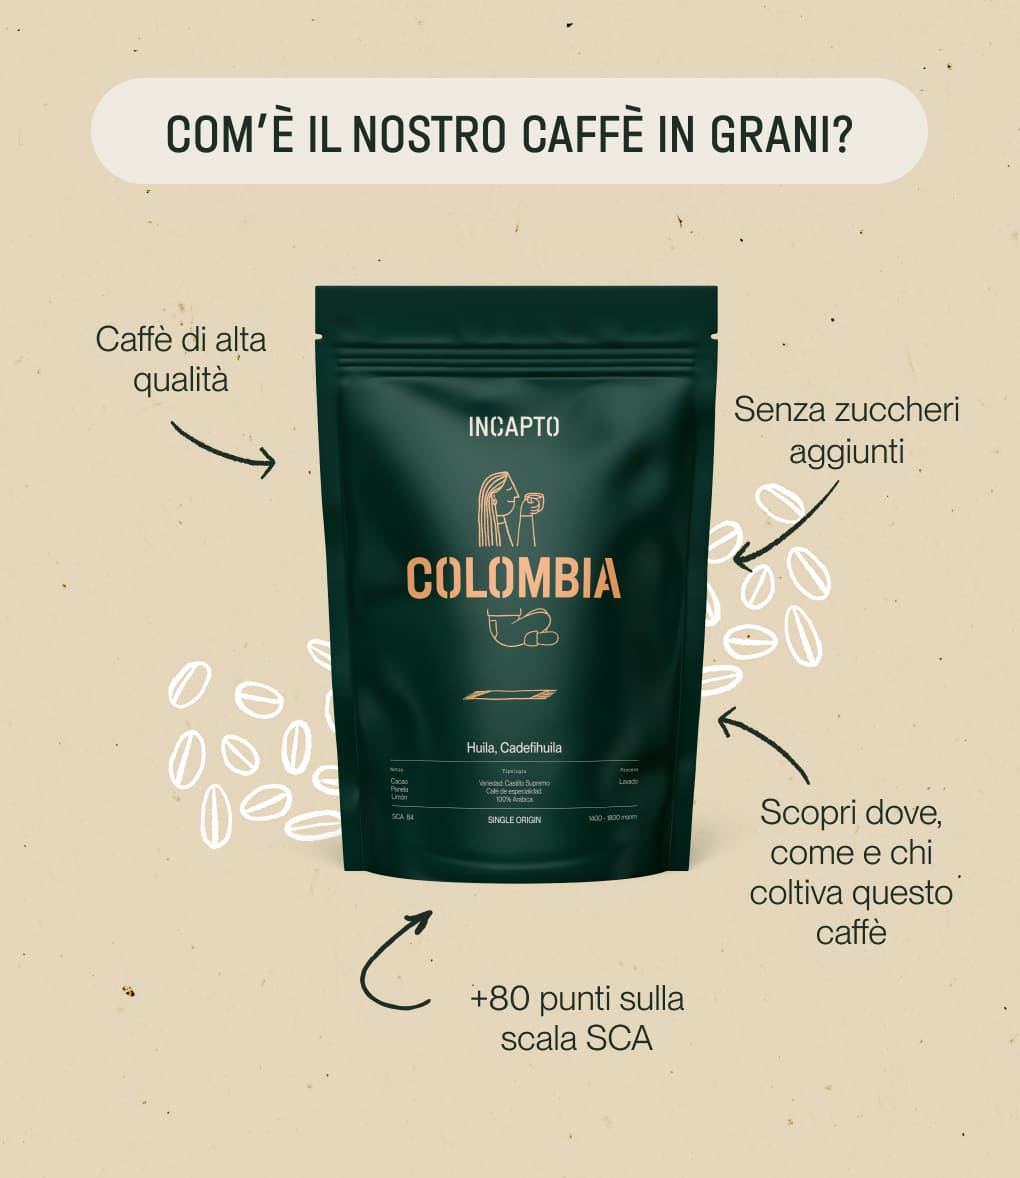 Caratteristiche del caffè di specialità proveniente dalla Colombia